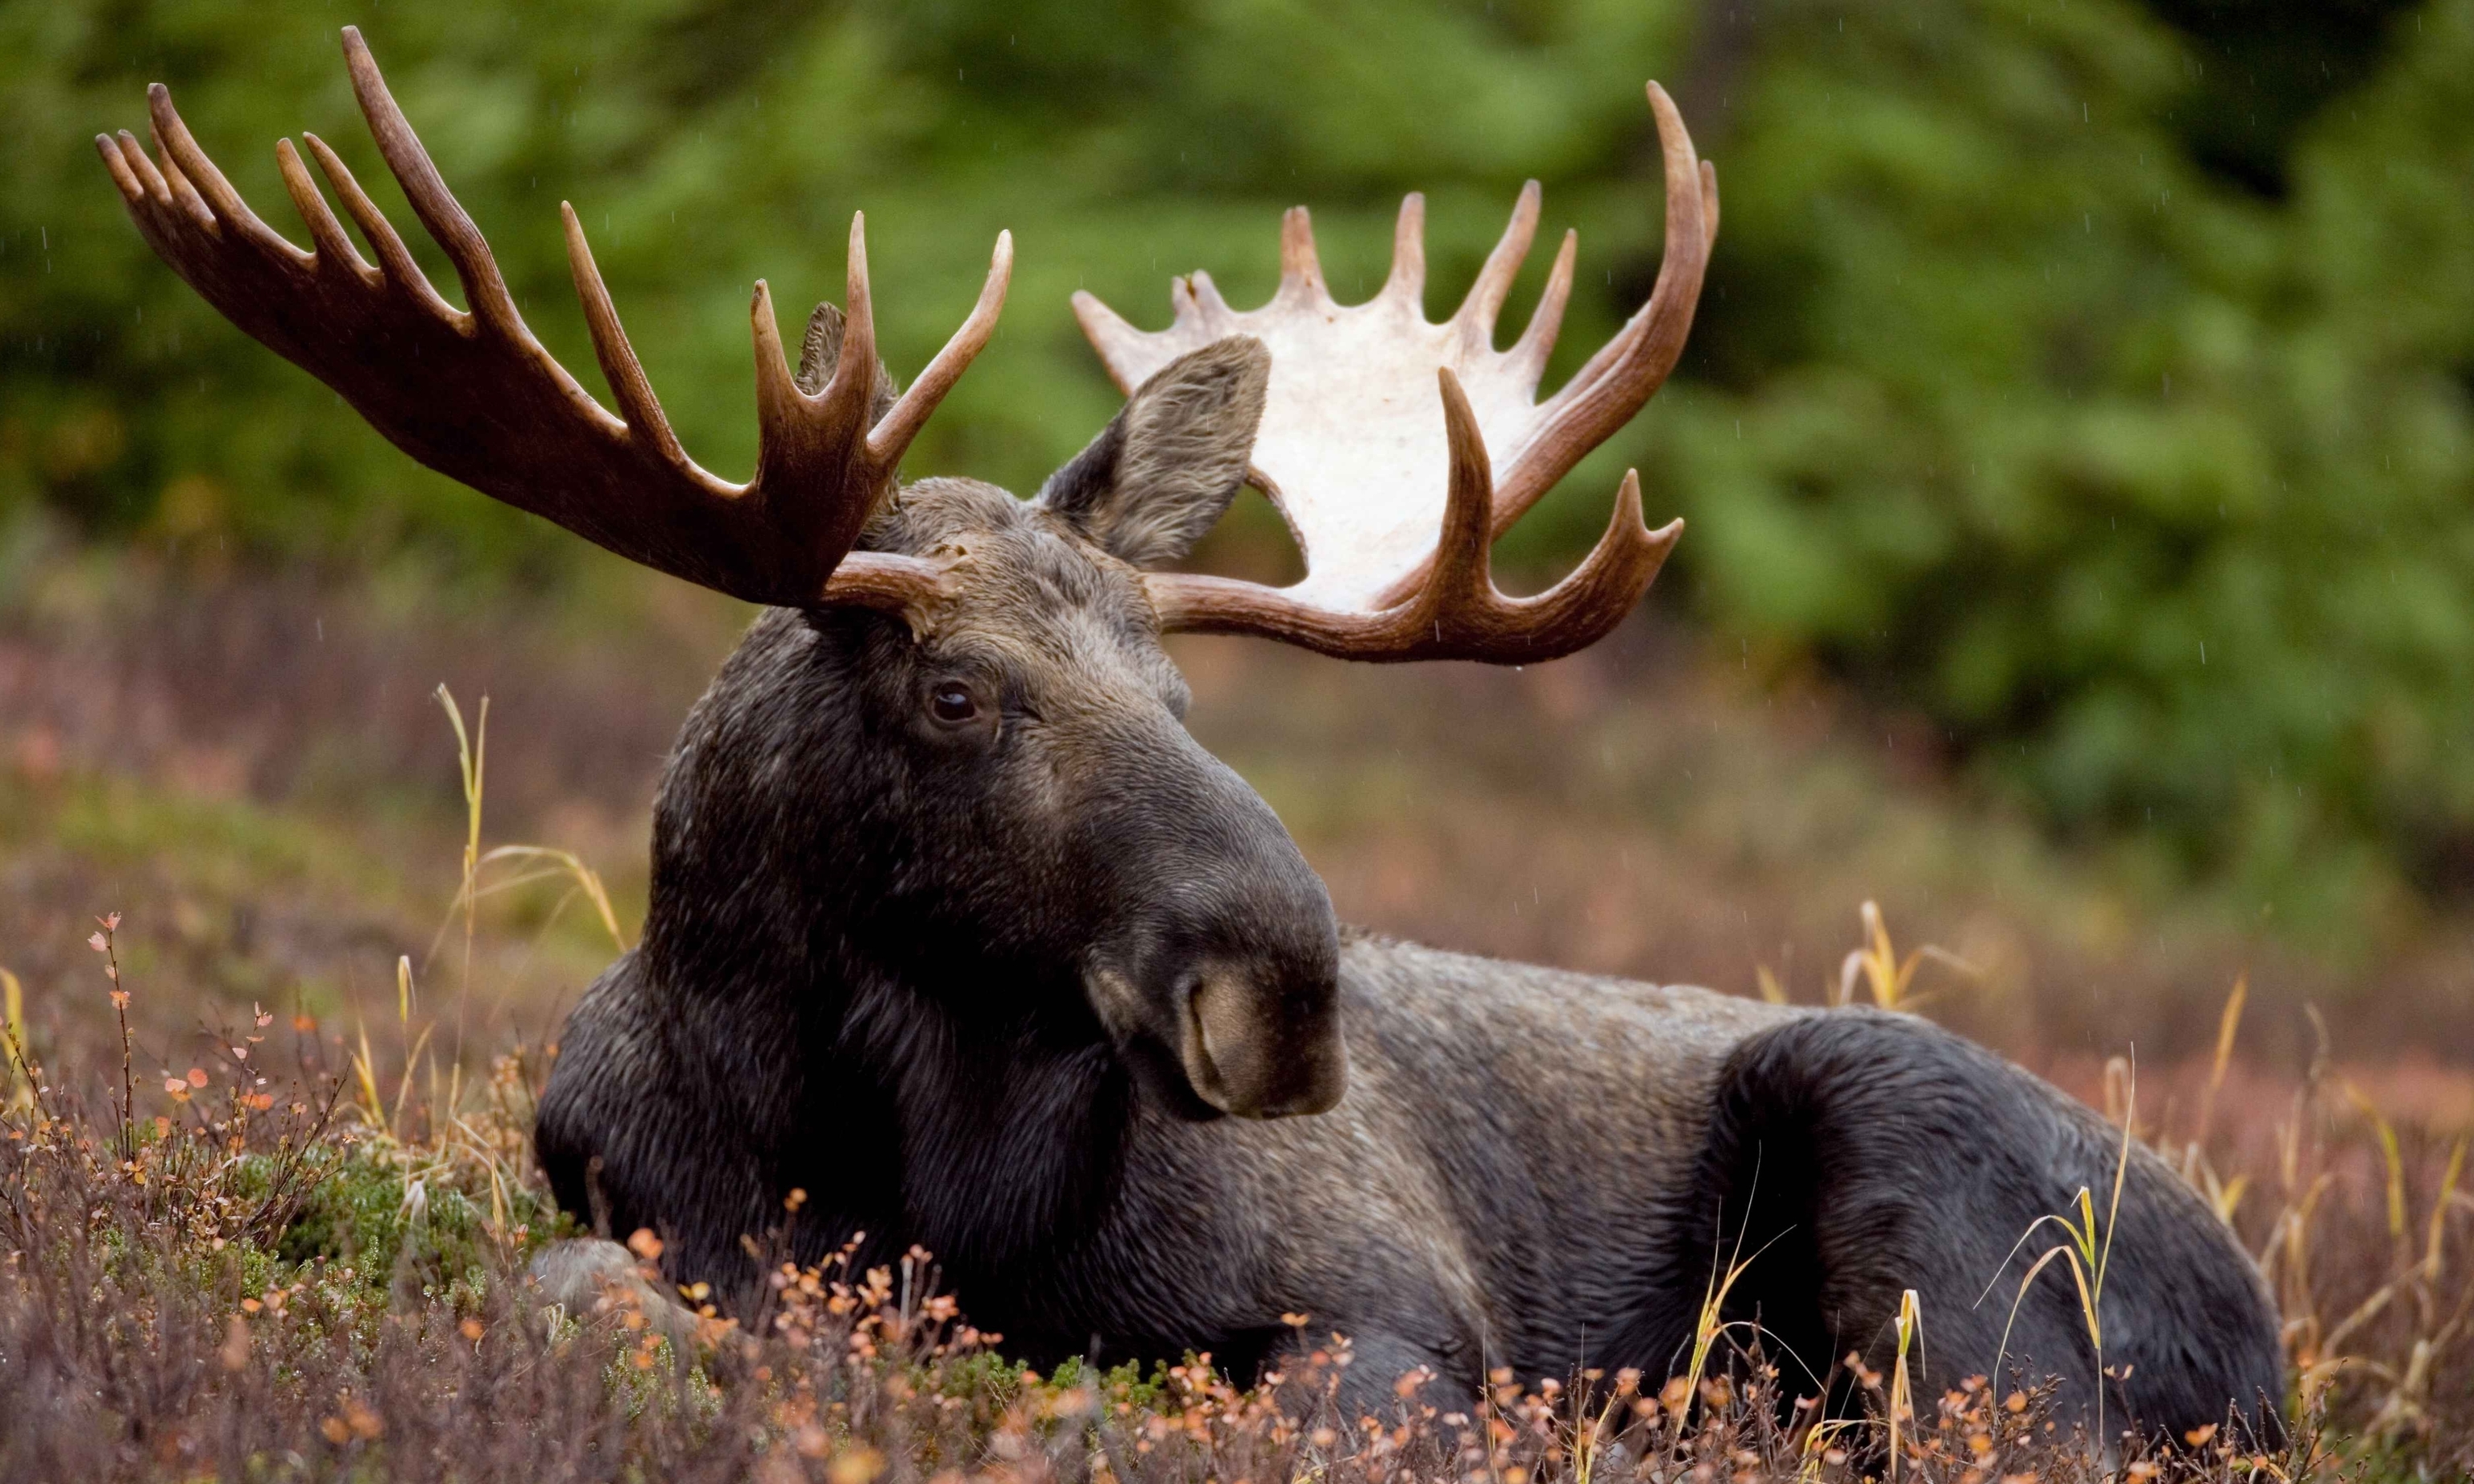 Bull moose.